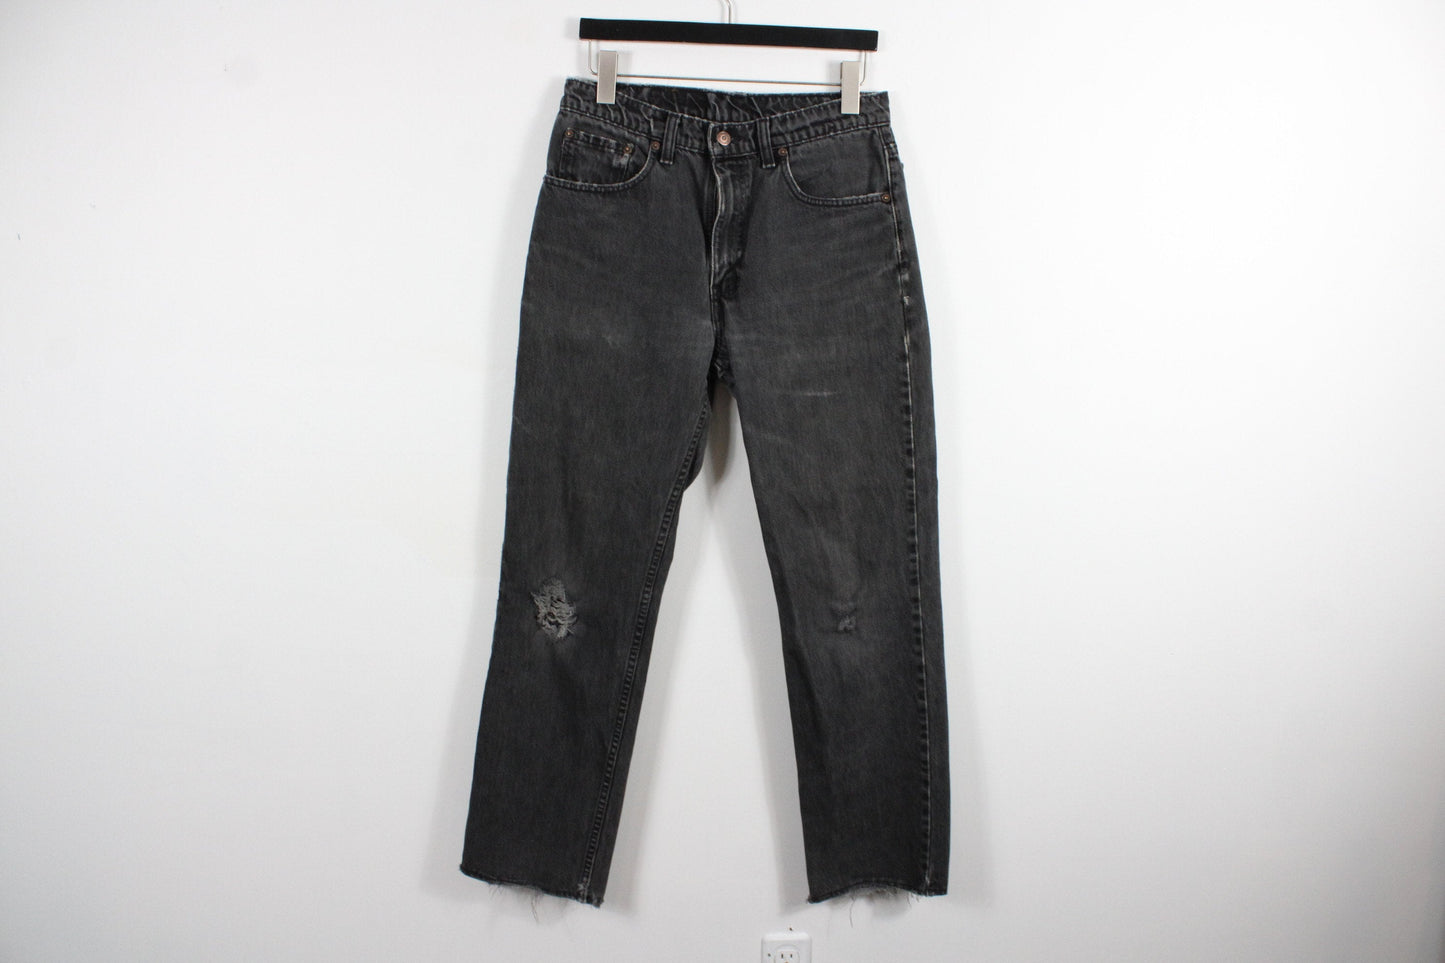 Levi's Jeans / Vintage Levis 550 Denim Trouser / 90s / 80s Clothing / Western Cowboy / 32x30